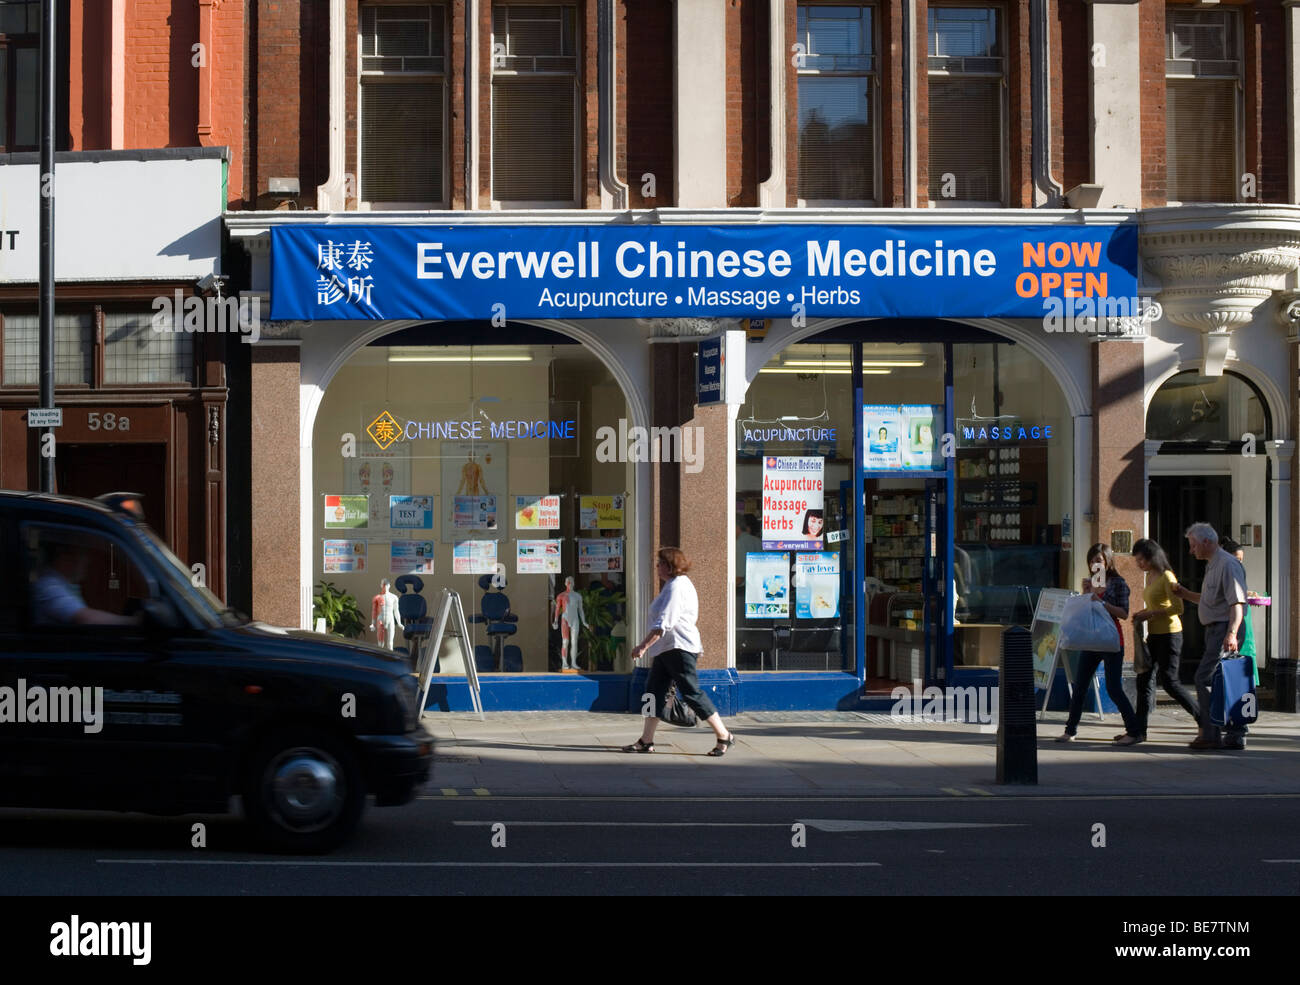 Everwell chinesische Medizin, Shaftesbury Avenue, London, England, Vereinigtes Königreich, Europa Stockfoto